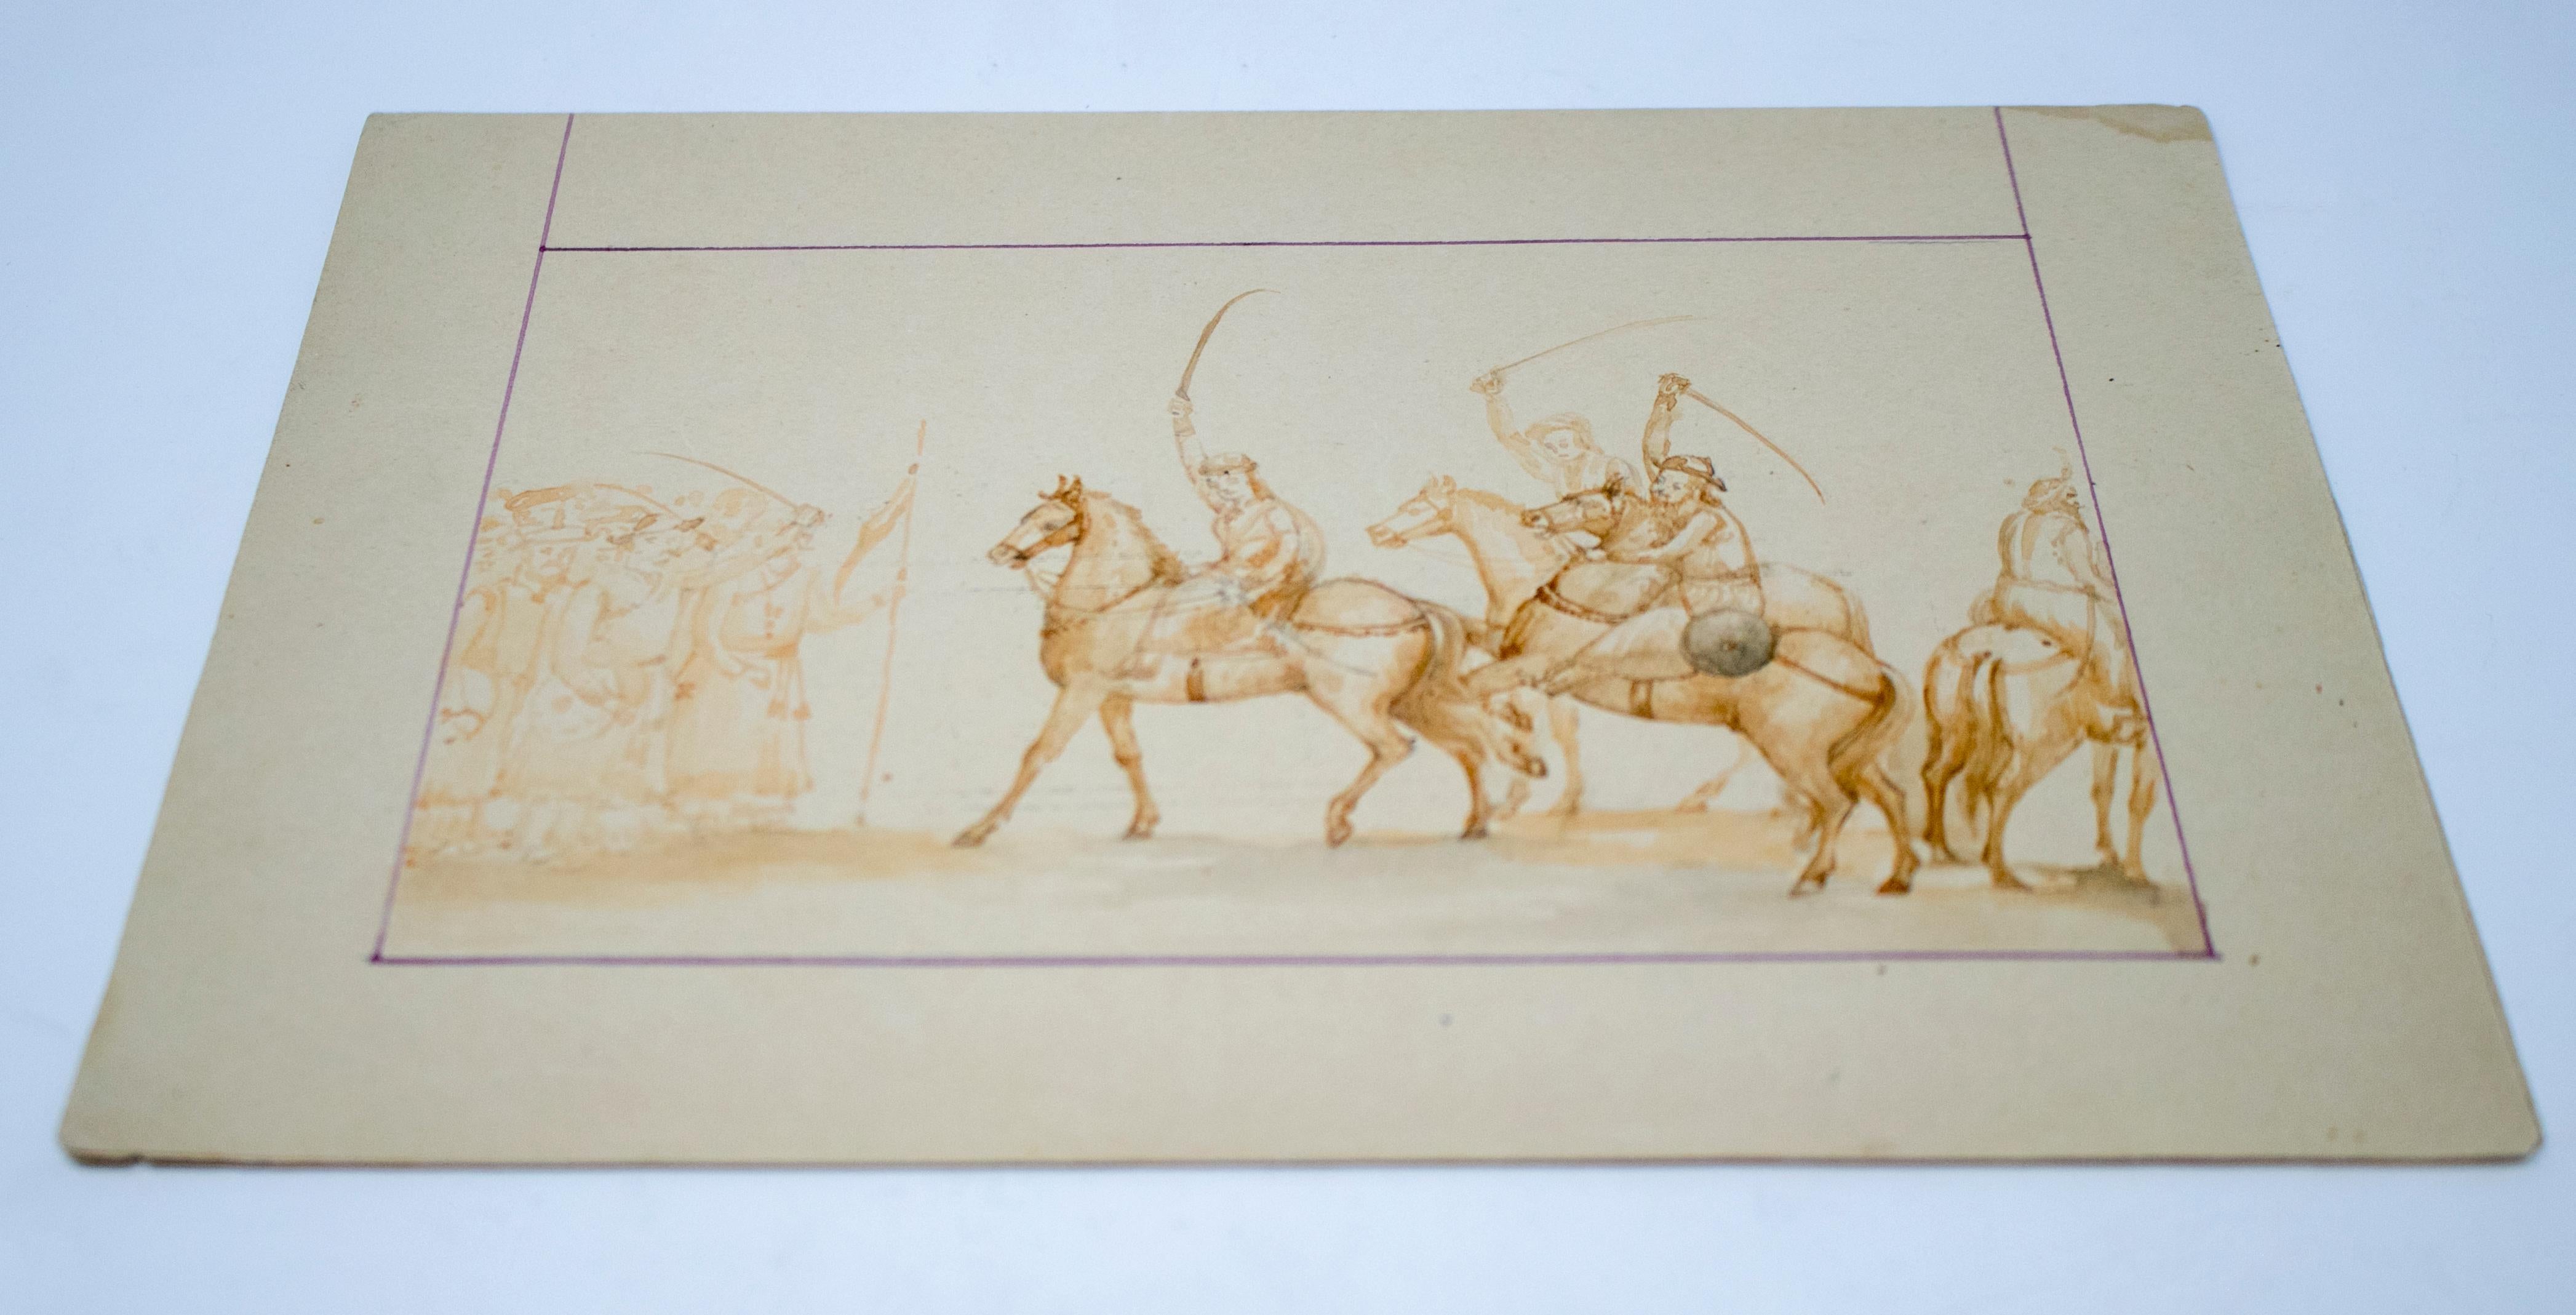 dessin indien des années 1970 sur papier gouaché représentant des cavaliers militaires. 

Fait partie d'une grande collection privée.   
     